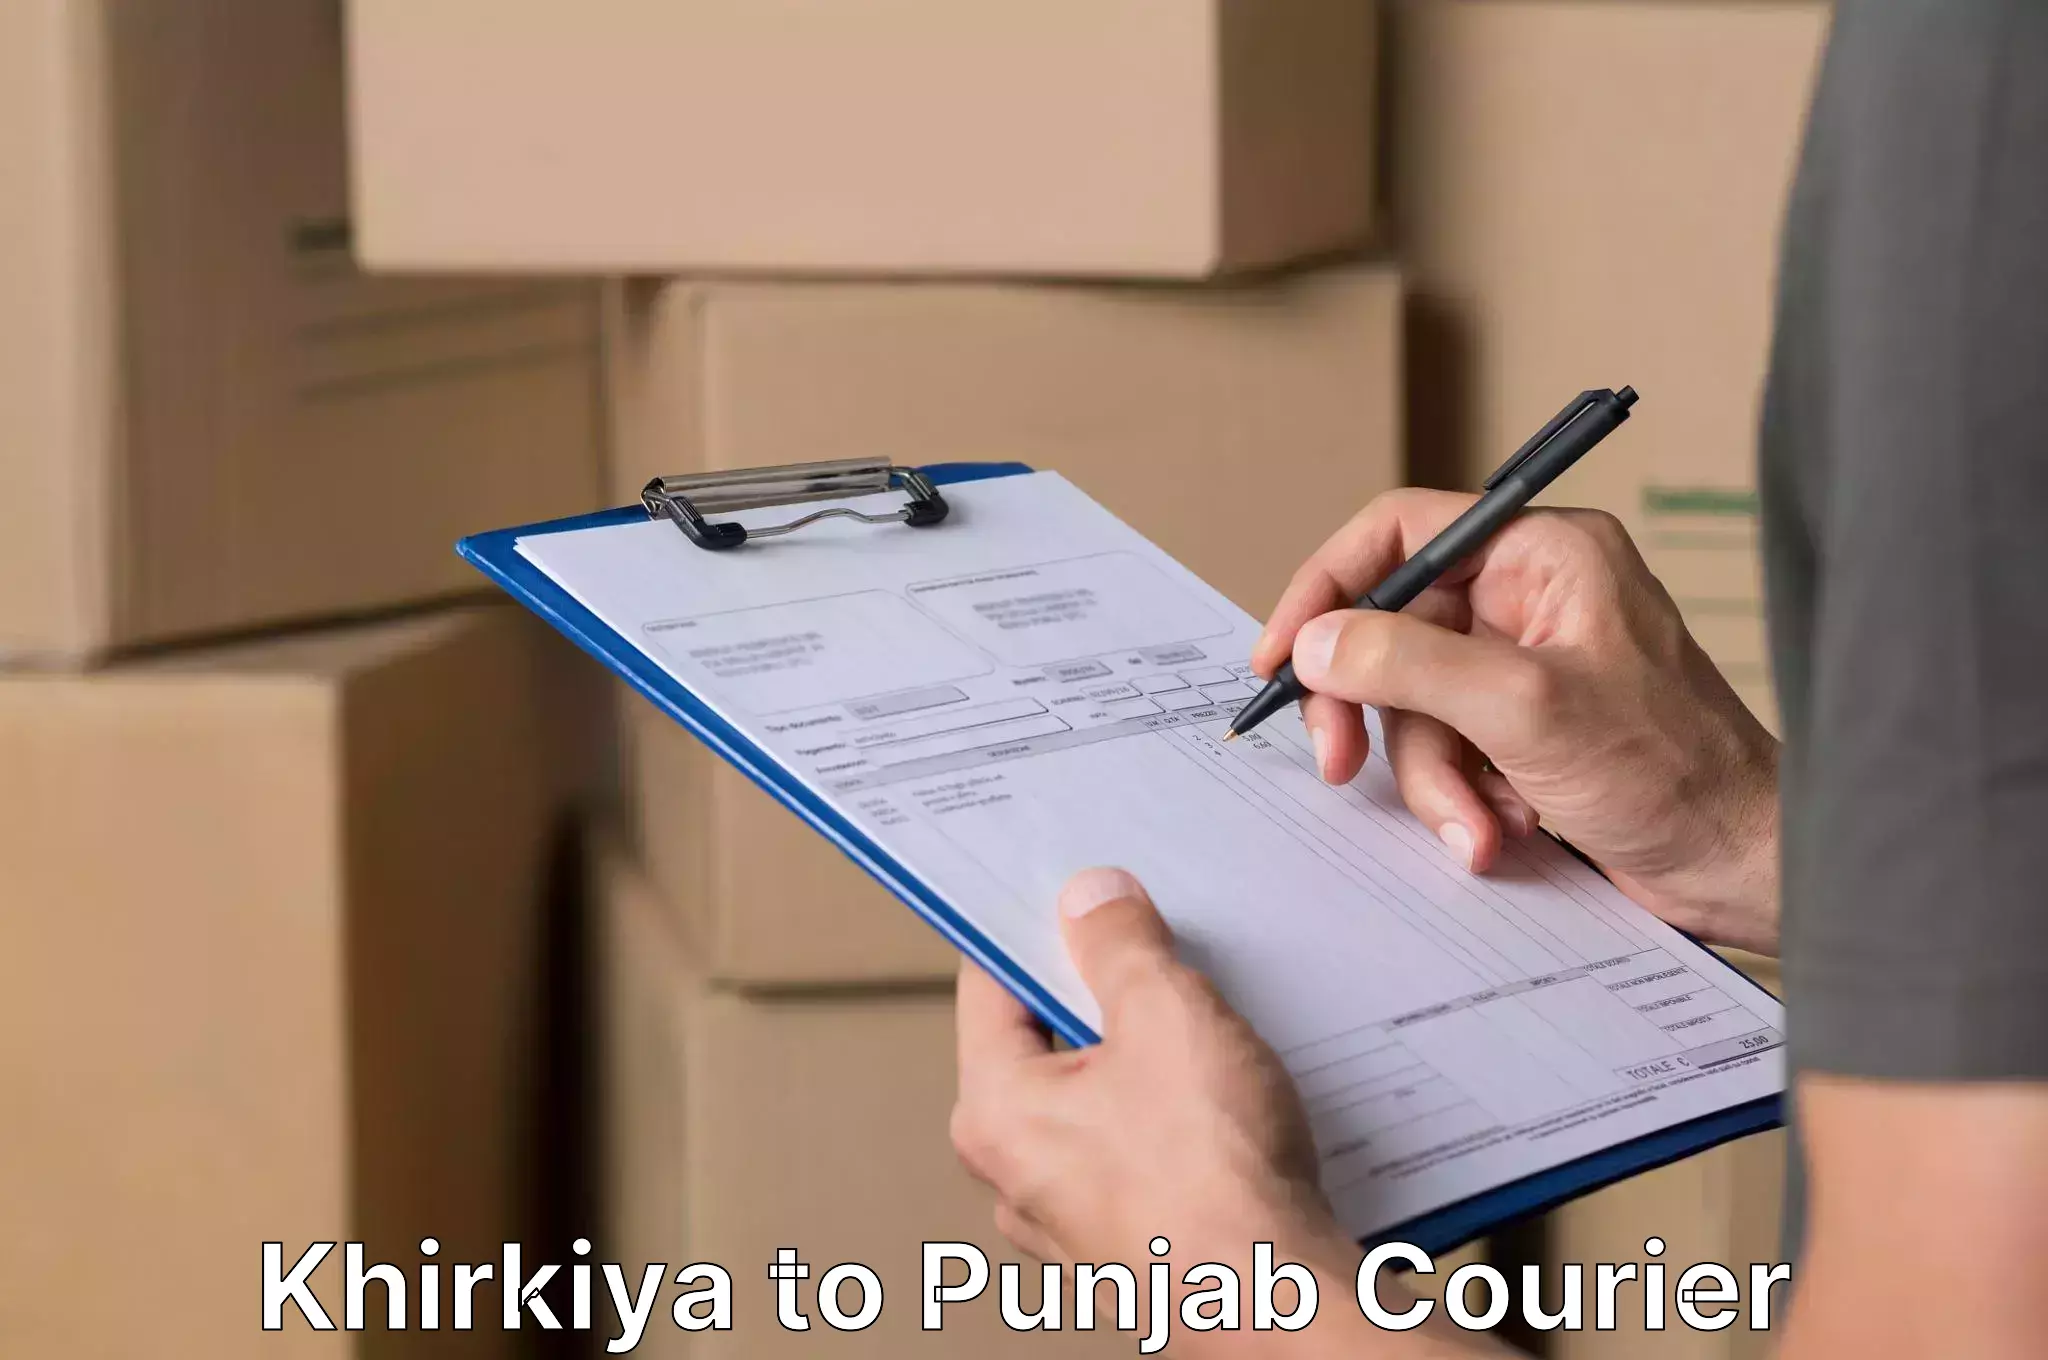 Efficient furniture movers Khirkiya to Punjab